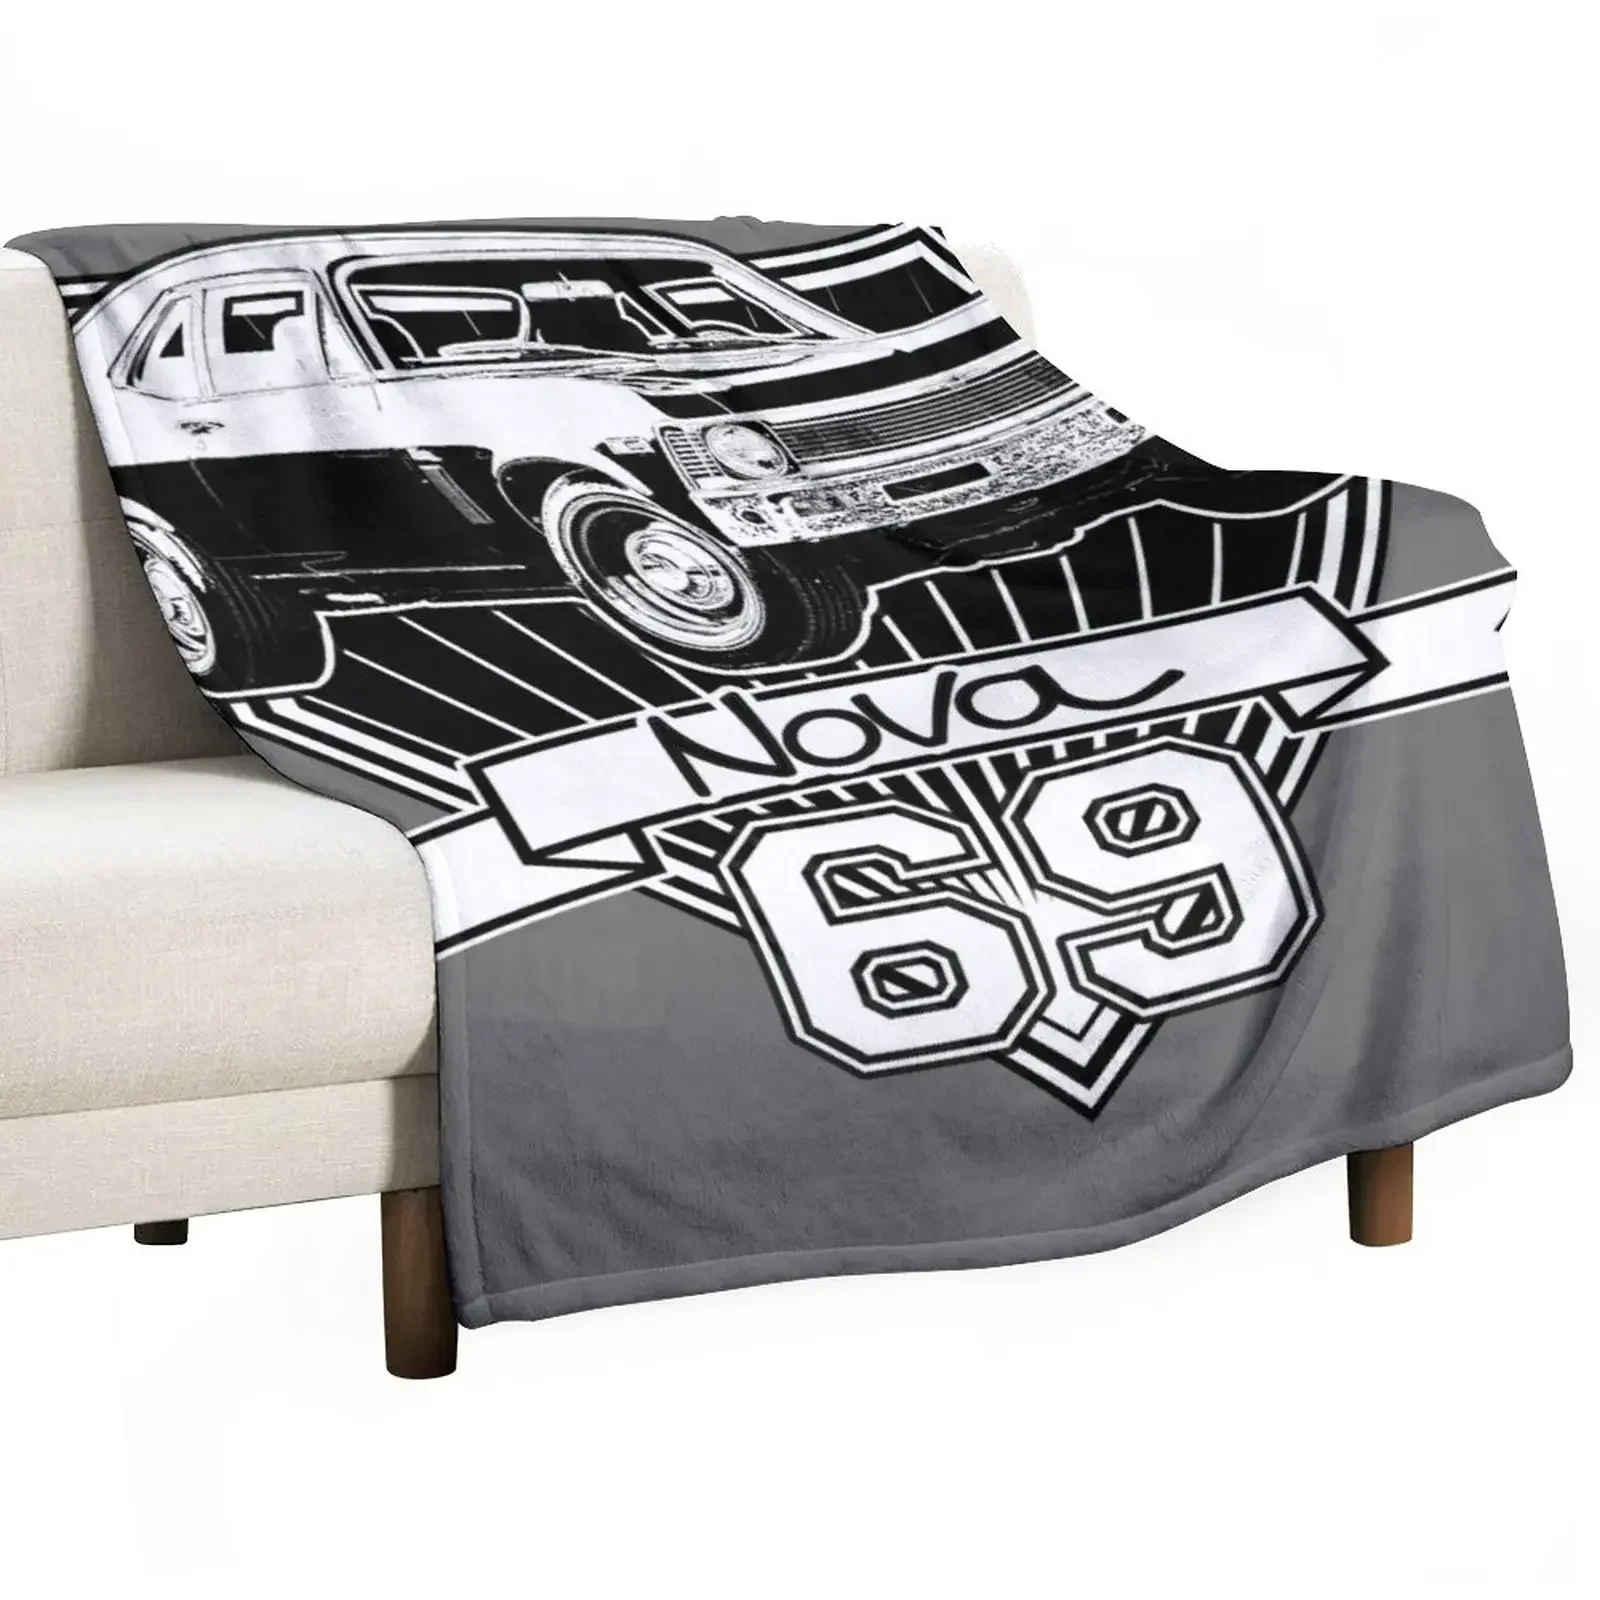 

1969 Nova одеяло для дивана тонкие мягкие теплые зимние одеяла